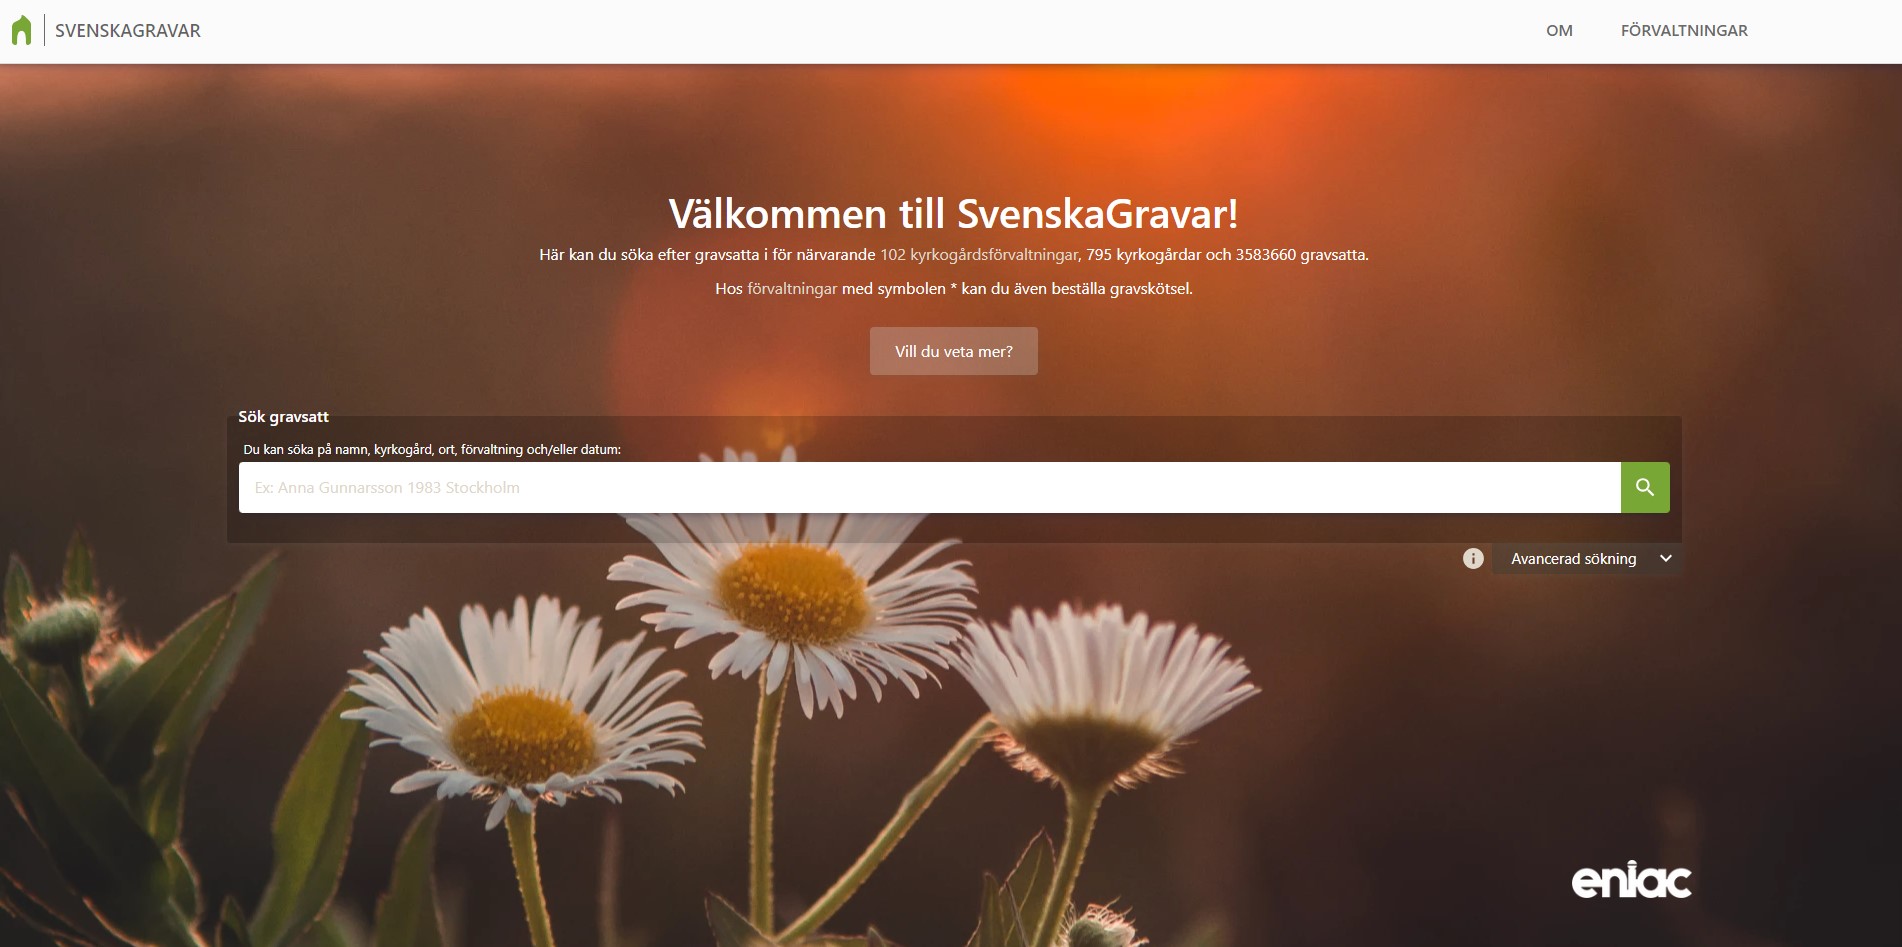 Bild på Svenska gravars hemsidas startsida. I bilden syns en bakgrundsbild på blommor av sorten Prästkrage i ett gyllene ljus. I bild syns också sajtens sökruta där webbesökaren kan söka efter gravsatta.